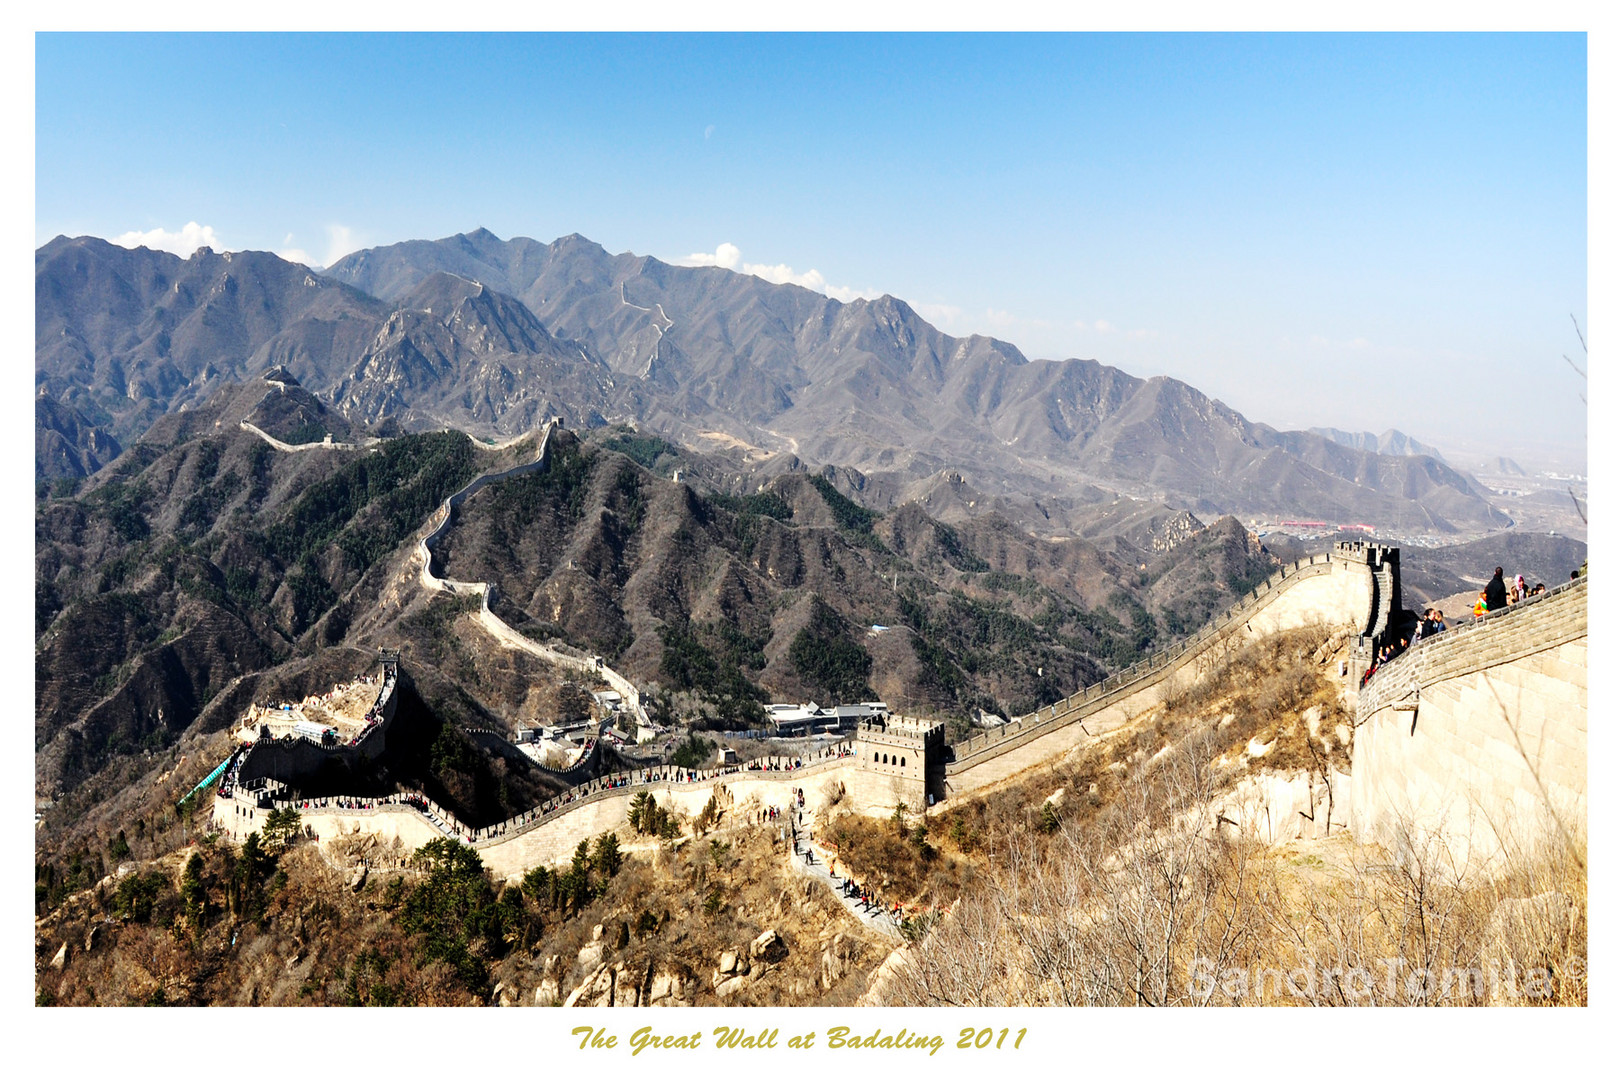 The Great Wall Badaling